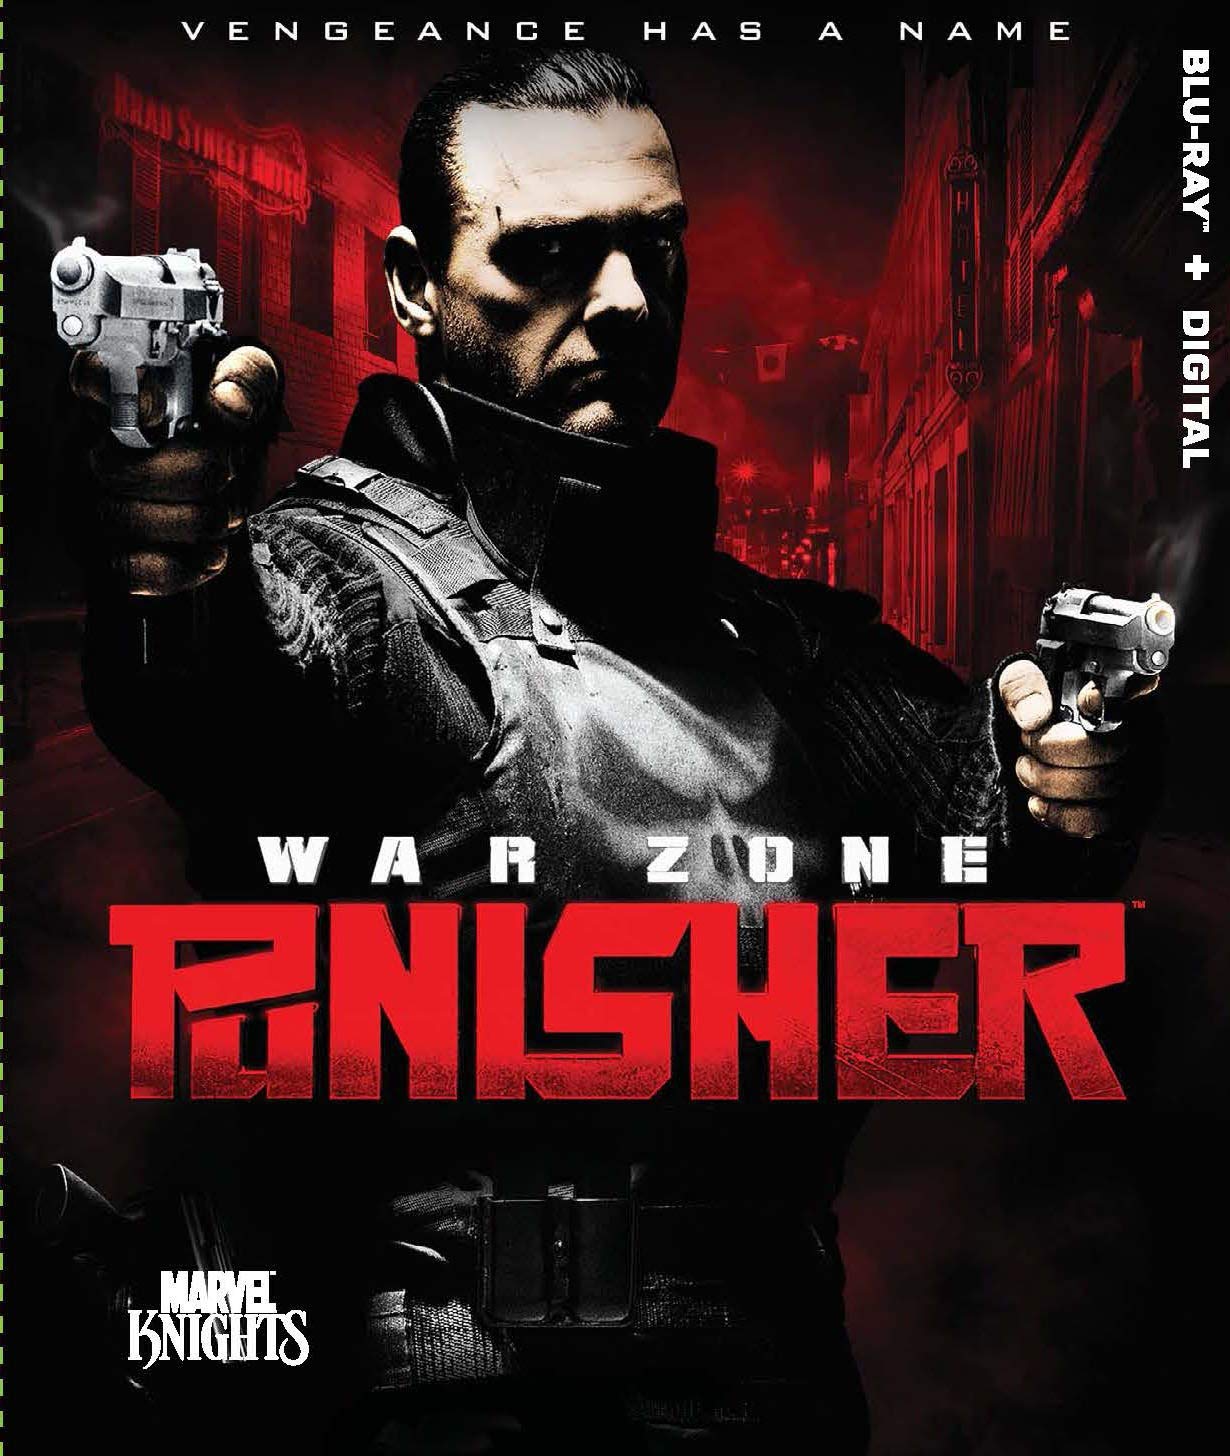 Punisher: War Zone - Darkside Records